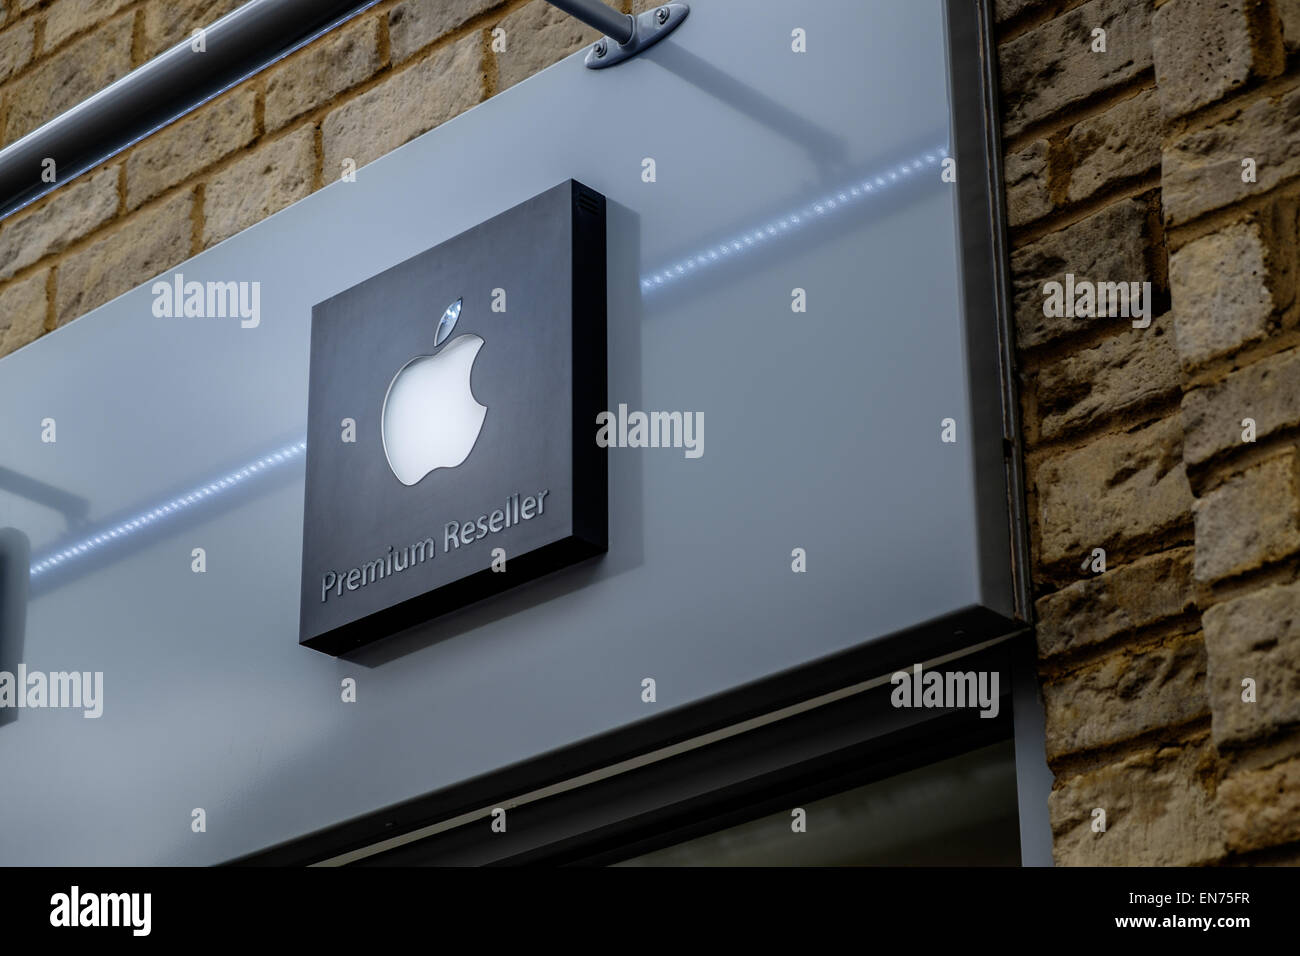 La marque de marque logo Apple sur le signe d'un revendeur autorisé autorisé Premium Macintosh Mac store shop exterior Banque D'Images